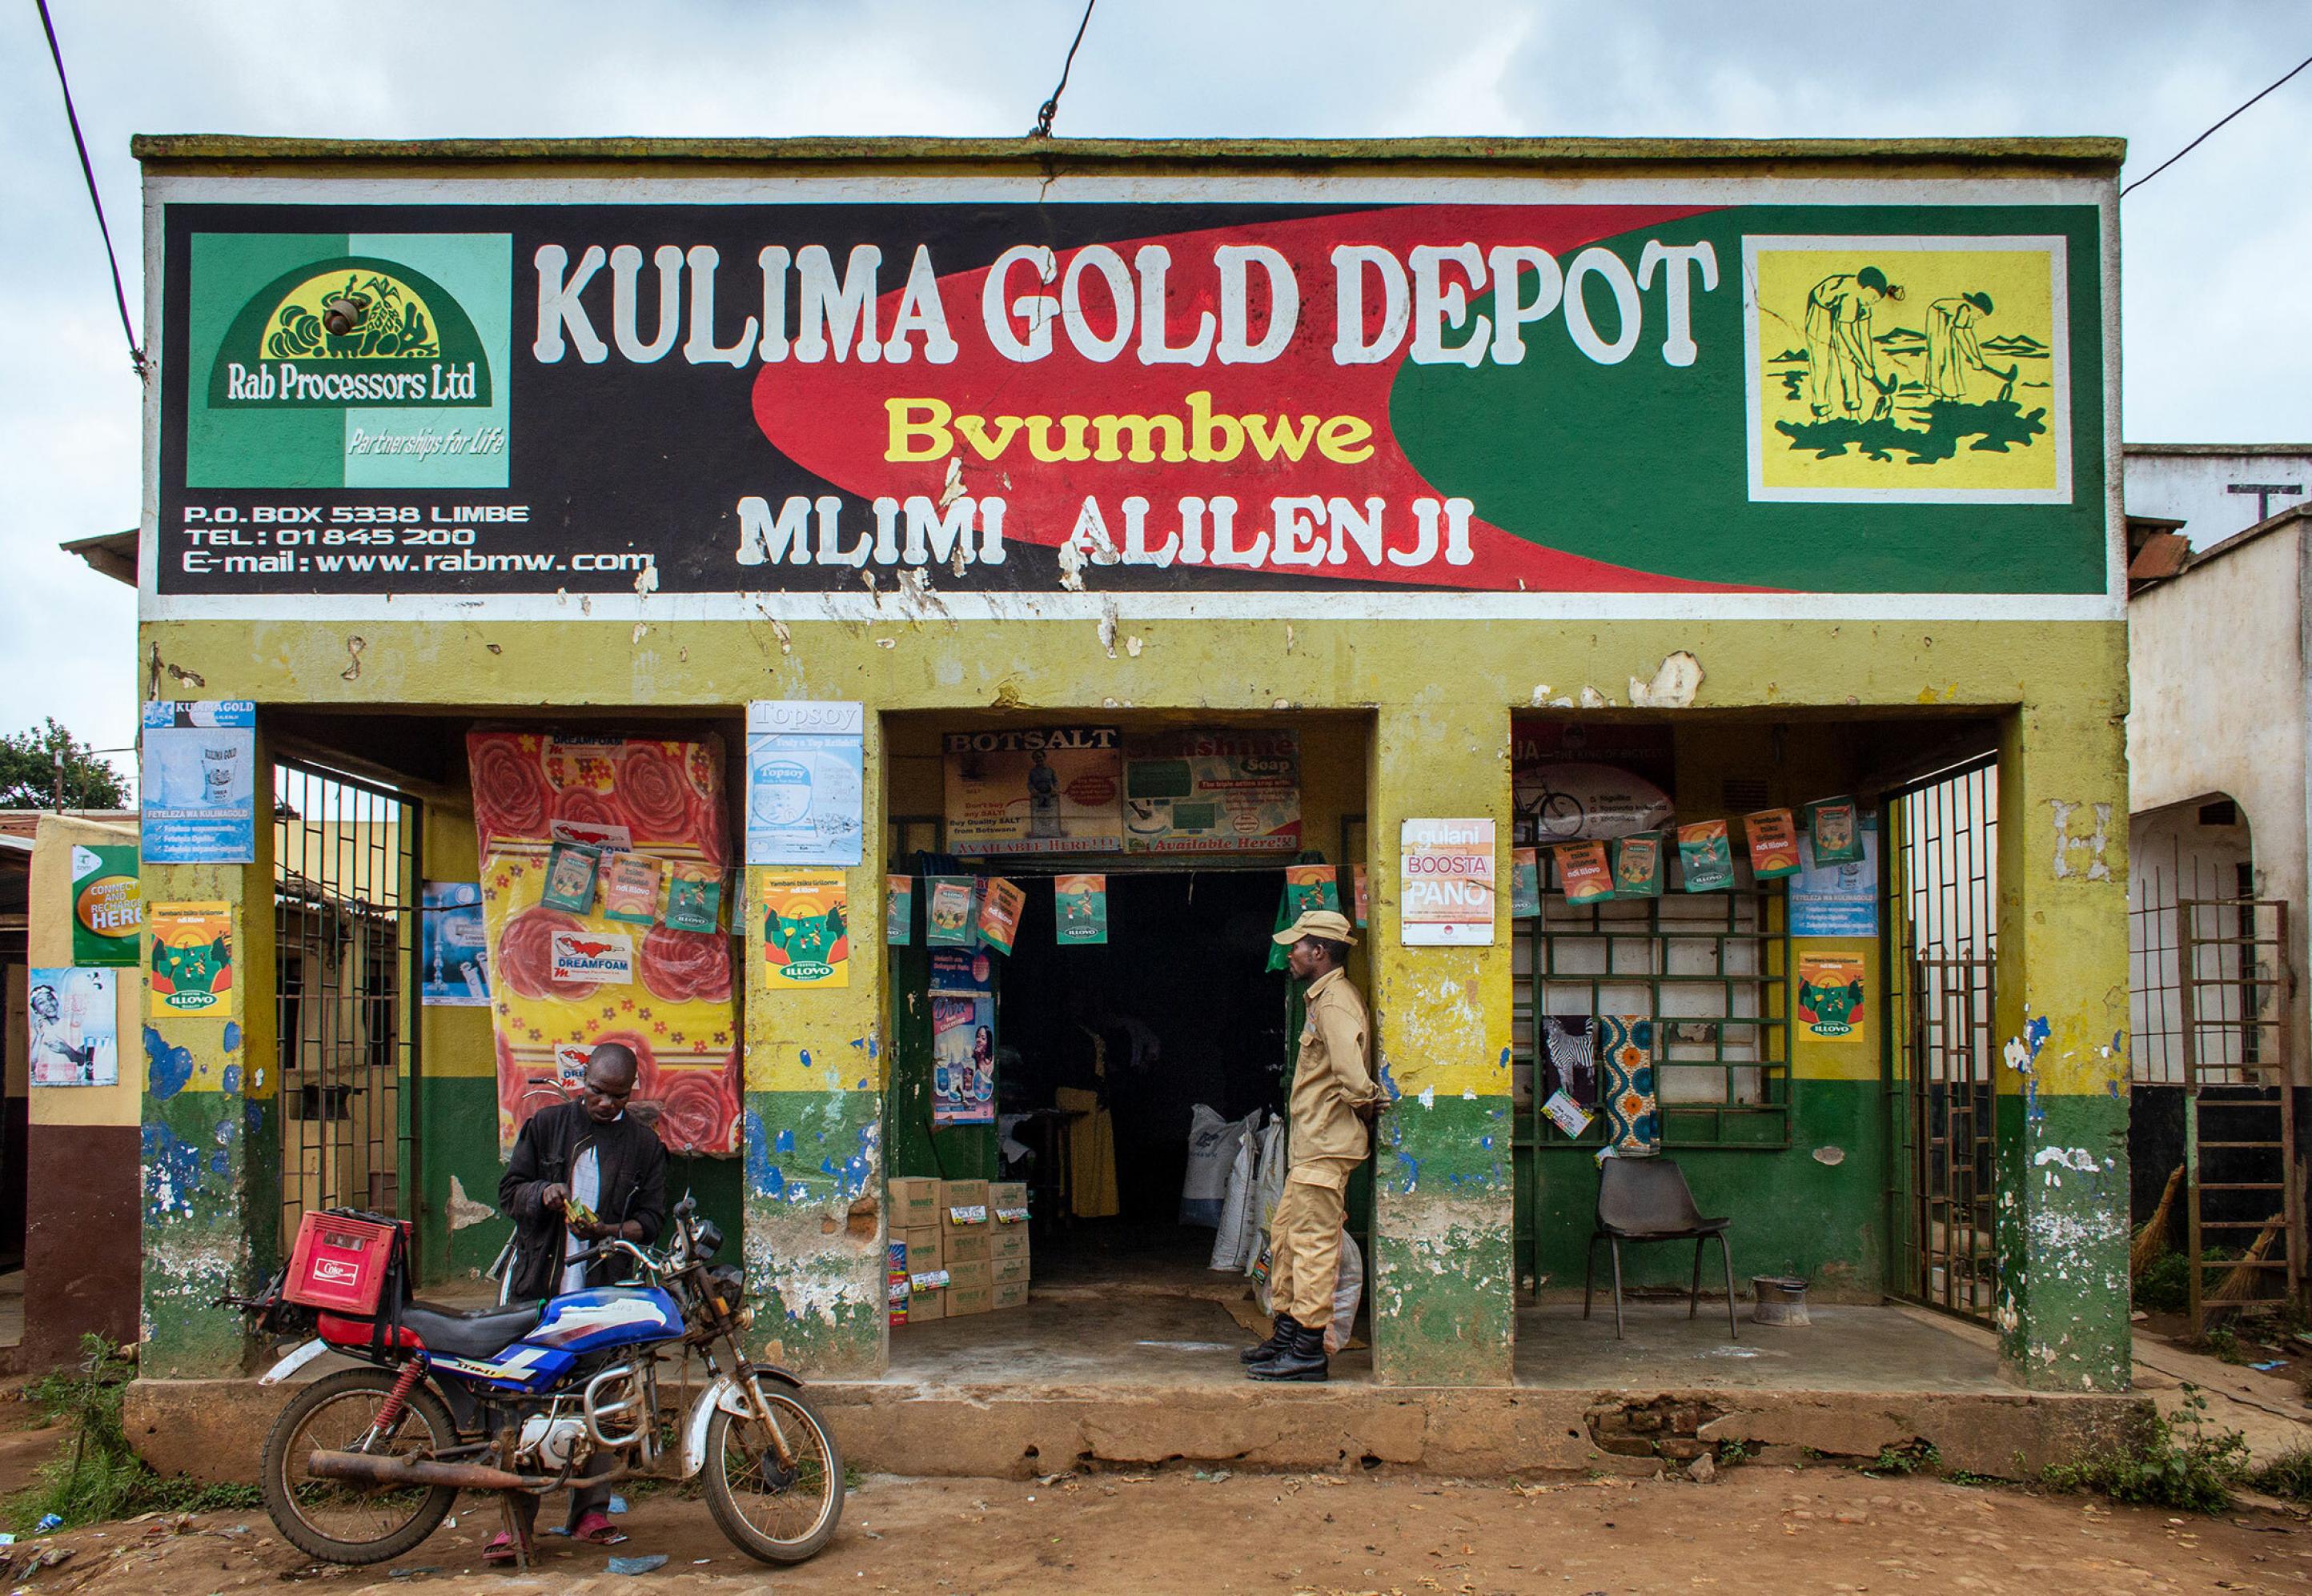 Ladenfassade eines Landhandels in Malawi. Im Eingang stehen Säcke mit Dünger und andere Produkte.